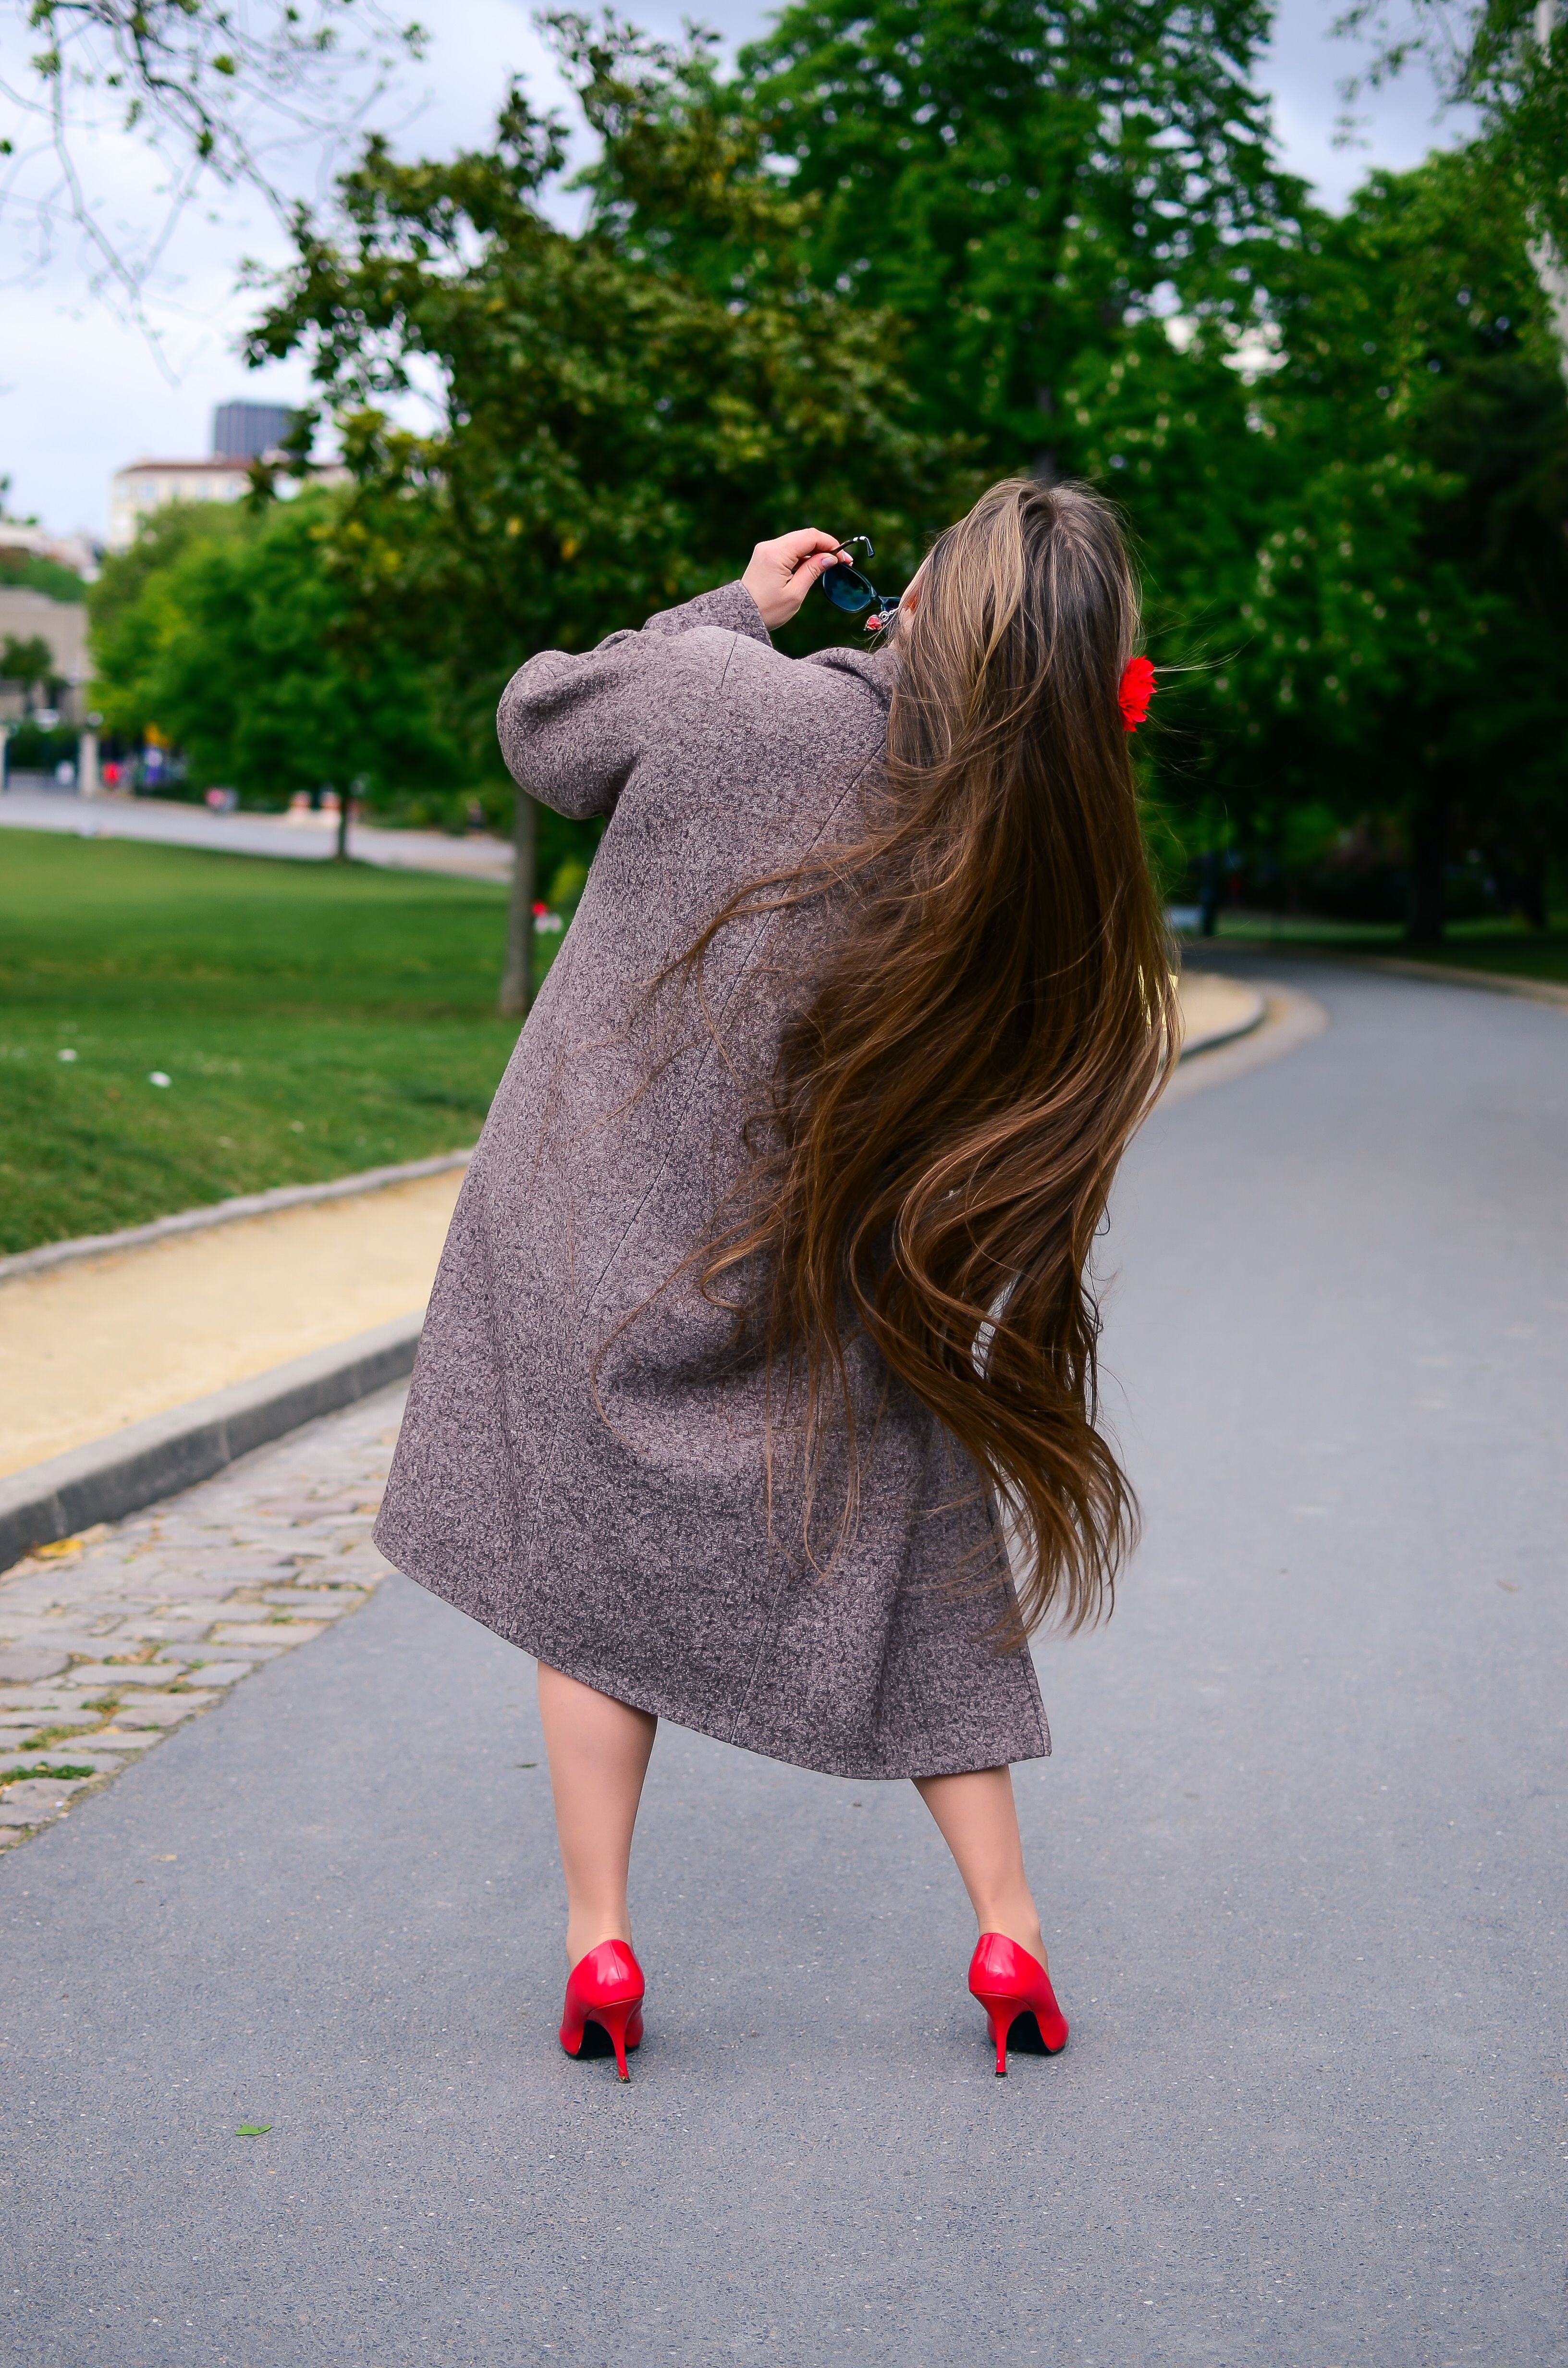 Eine Rückansicht einer Frau mit extrem langem brünetten Haar | Quelle: Shutterstock